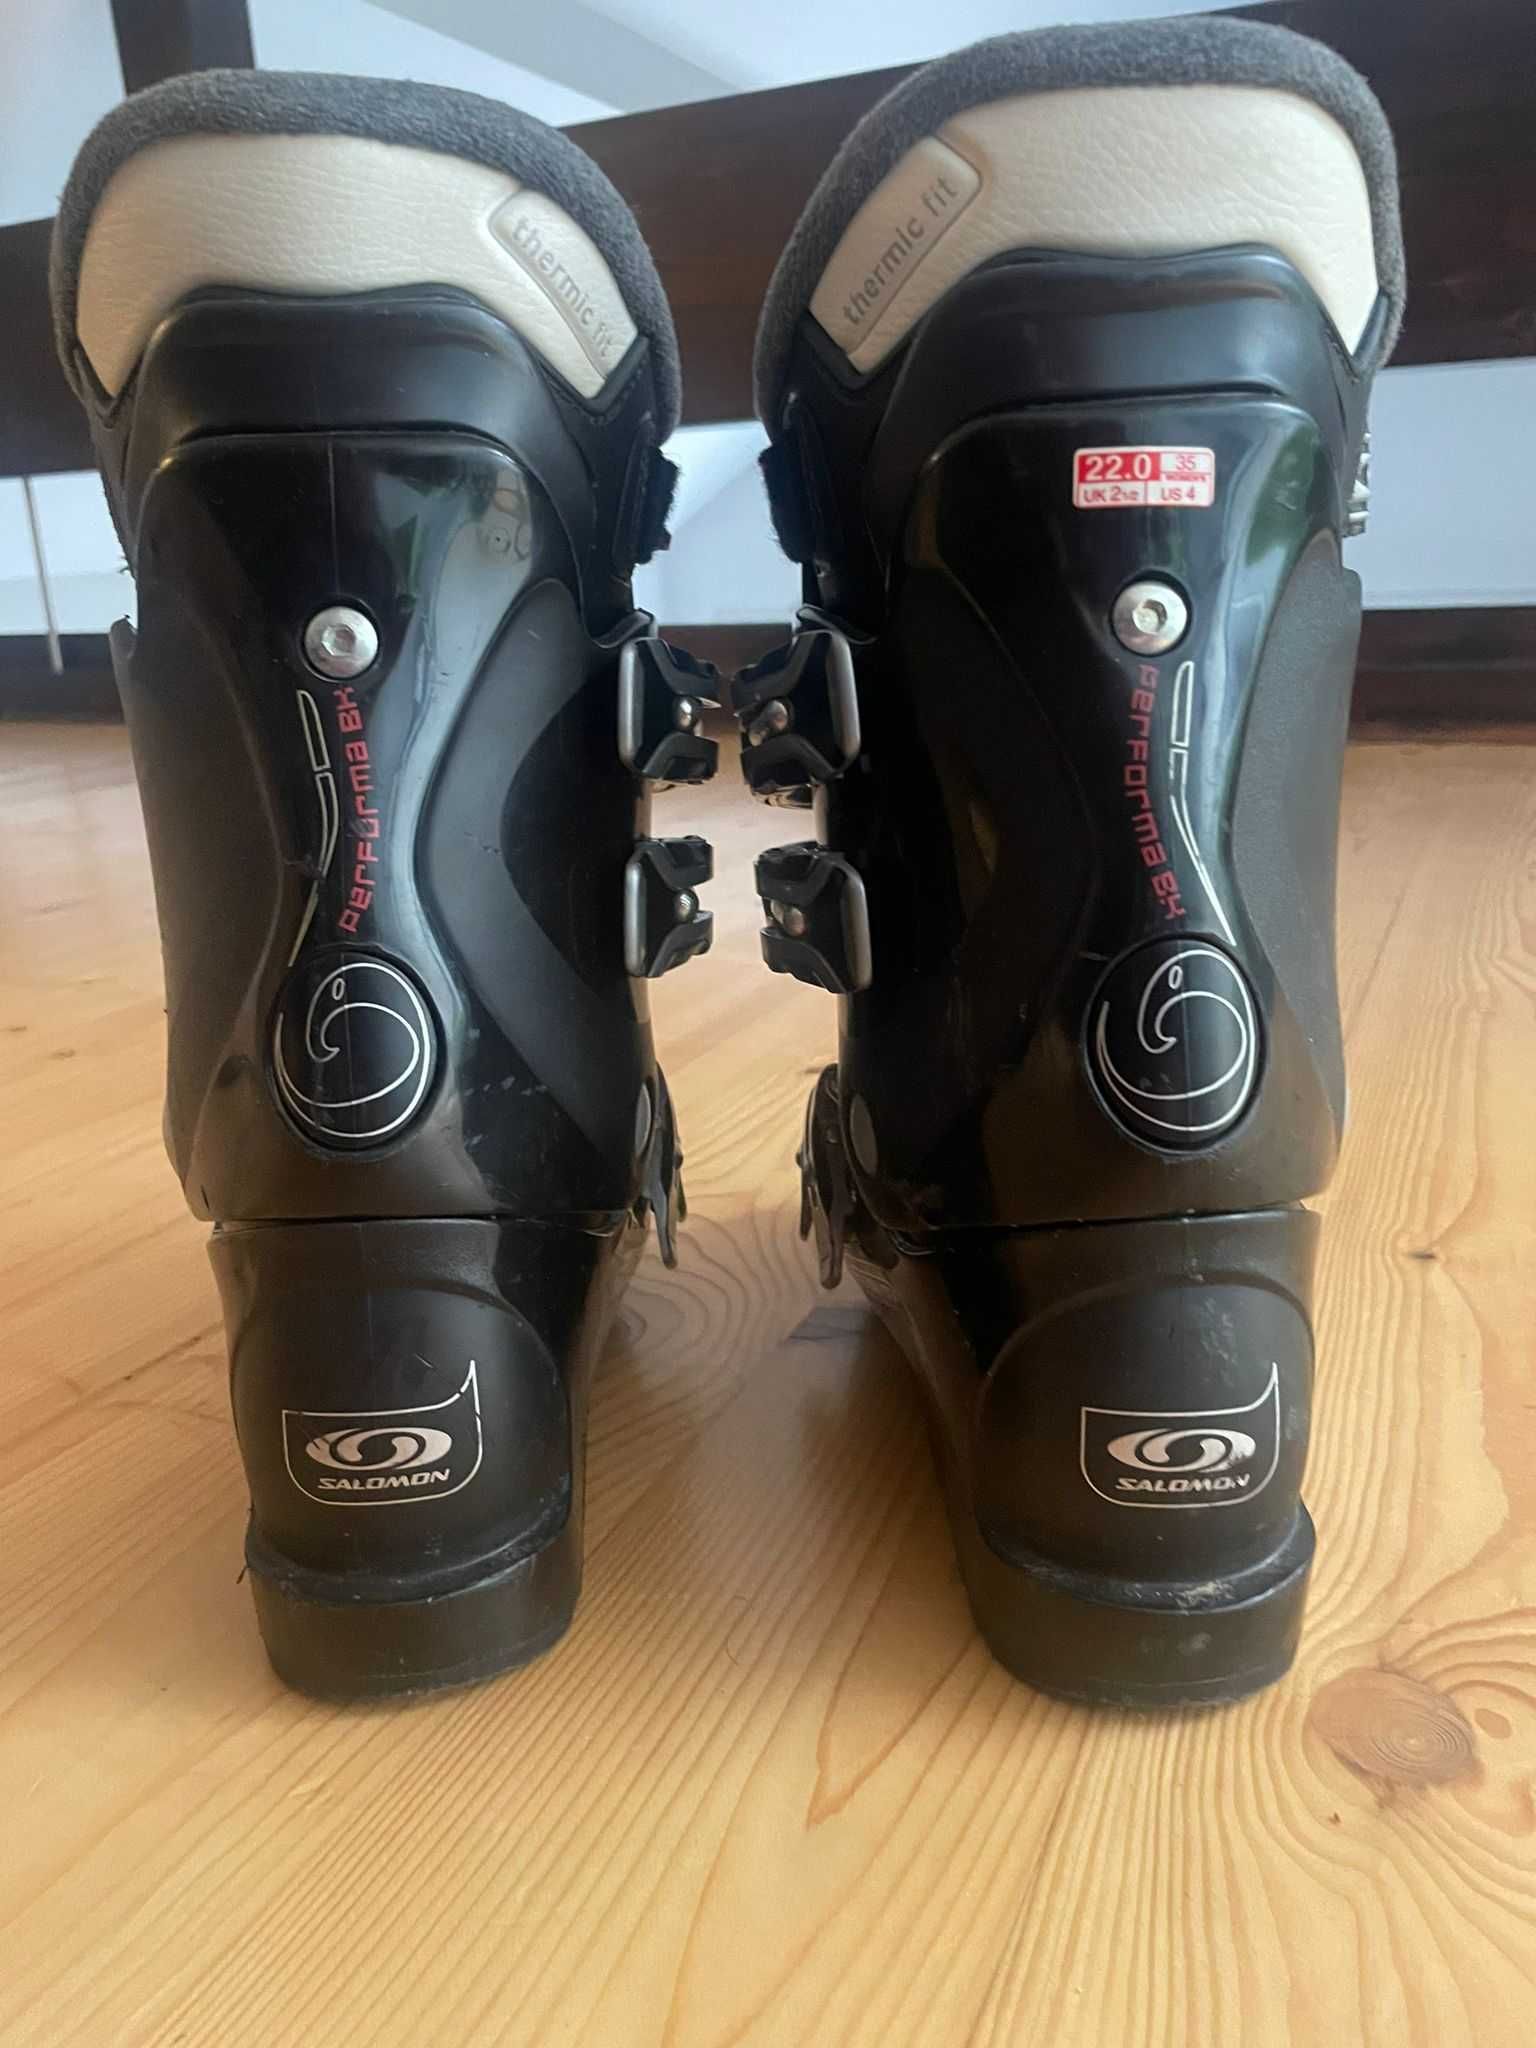 Salomon buty narciarskie damskie rozmiar 35 (22.0)